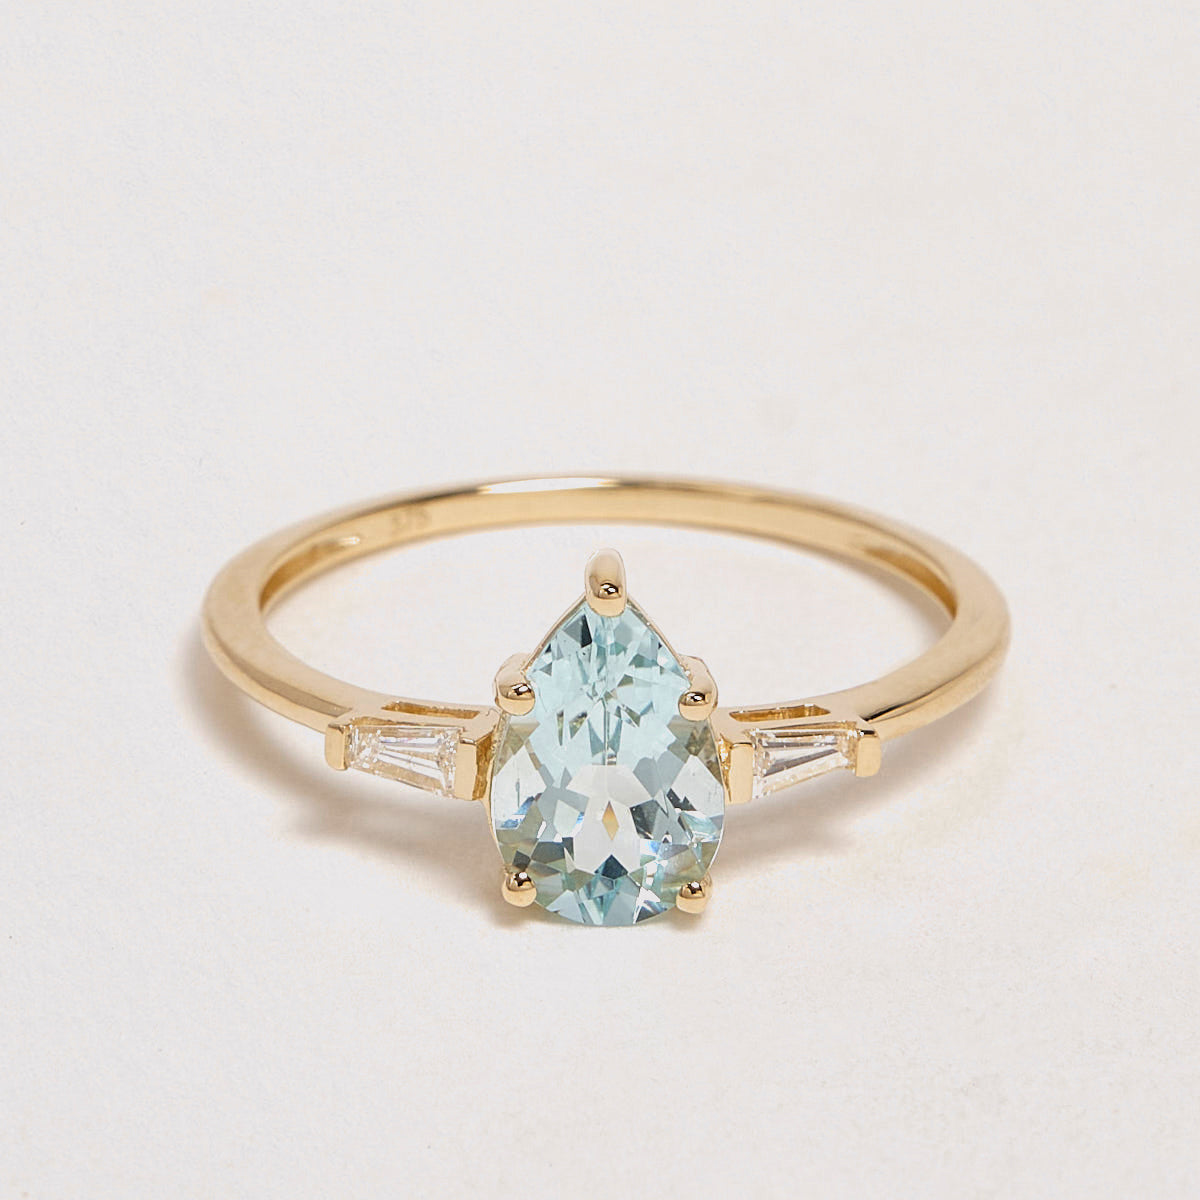 Tindra 9ct Yellow Gold Aquamarine & Diamond Ring